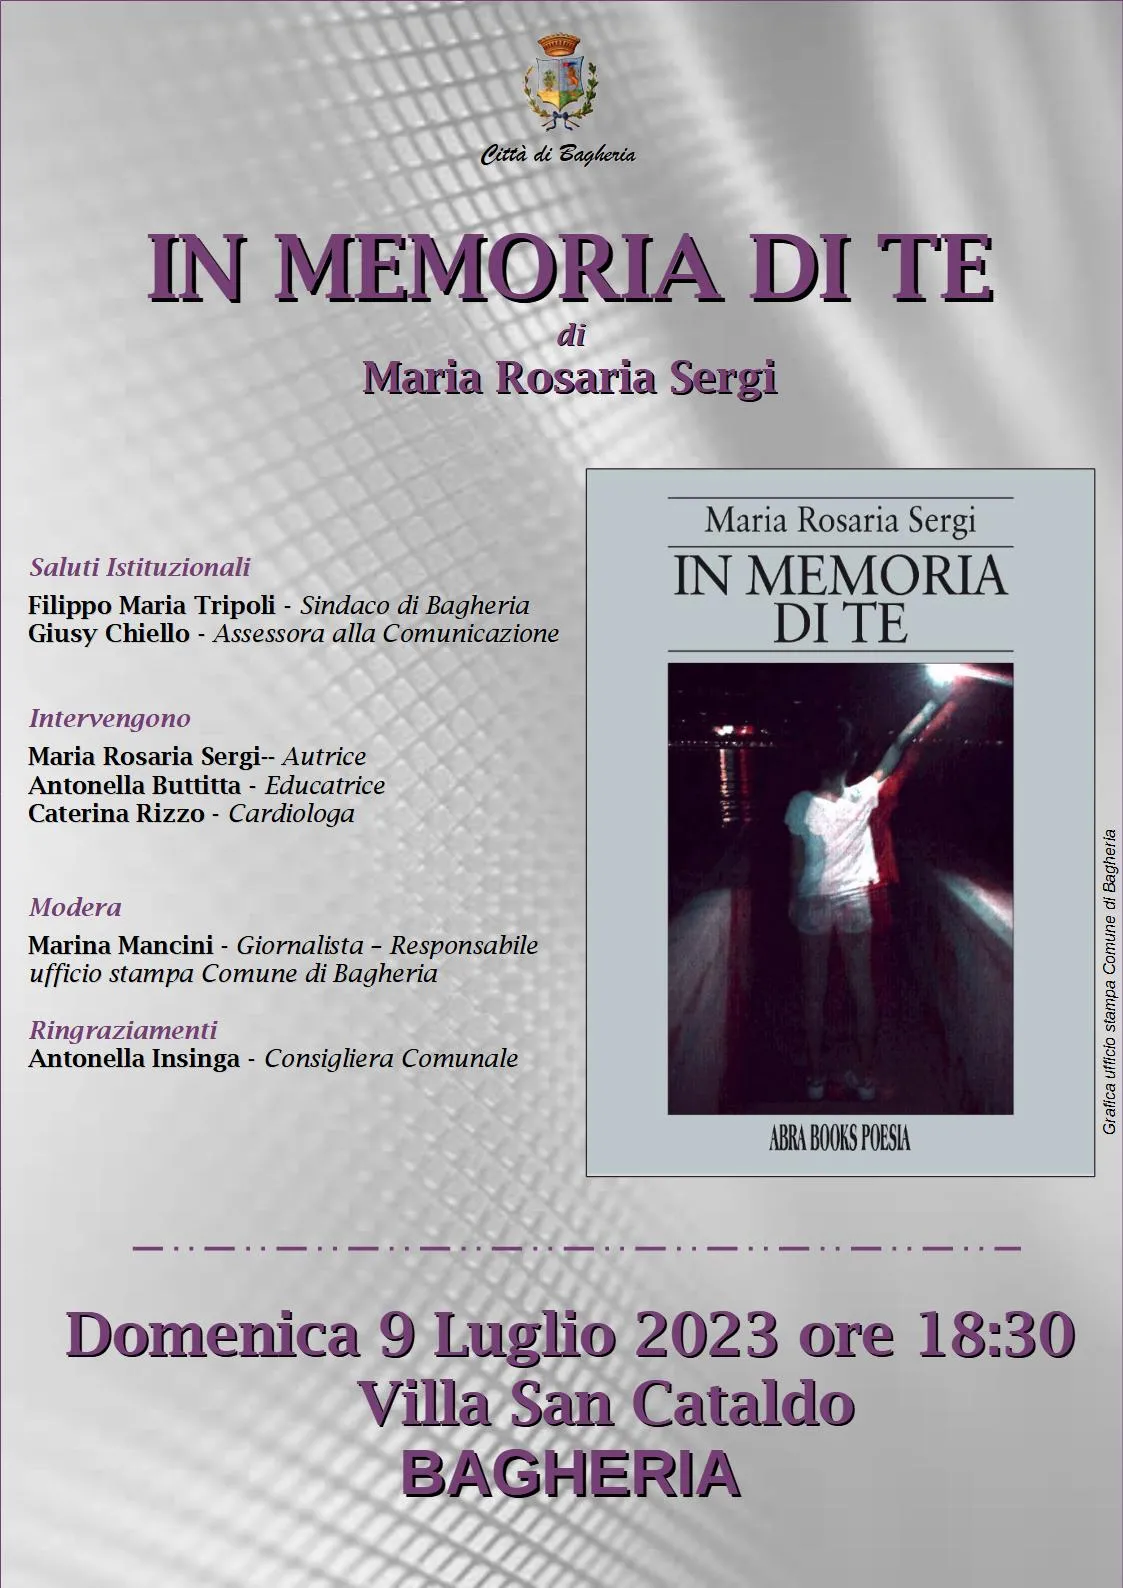 Presentazione del libro: “In memoria di te” di Maria Rosaria Sergi, domenica 9 luglio a villa San Cataldo.